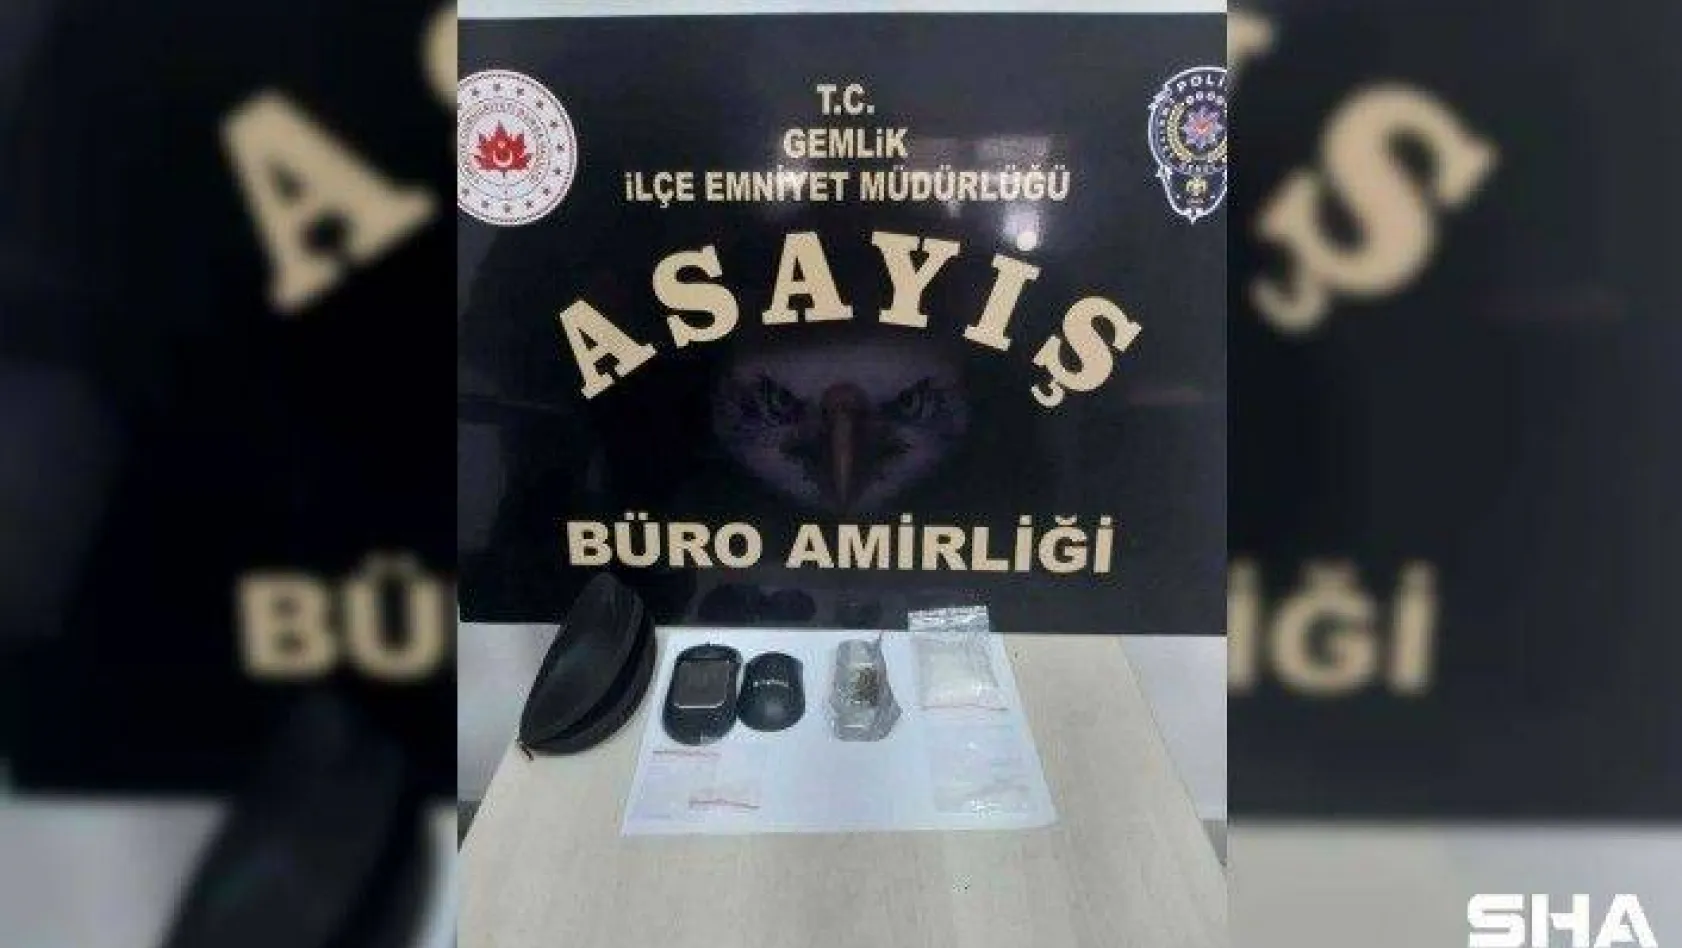 Bursa'da mouse içine saklanmış dijital hassas terazi polisin gözünden kaçmadı